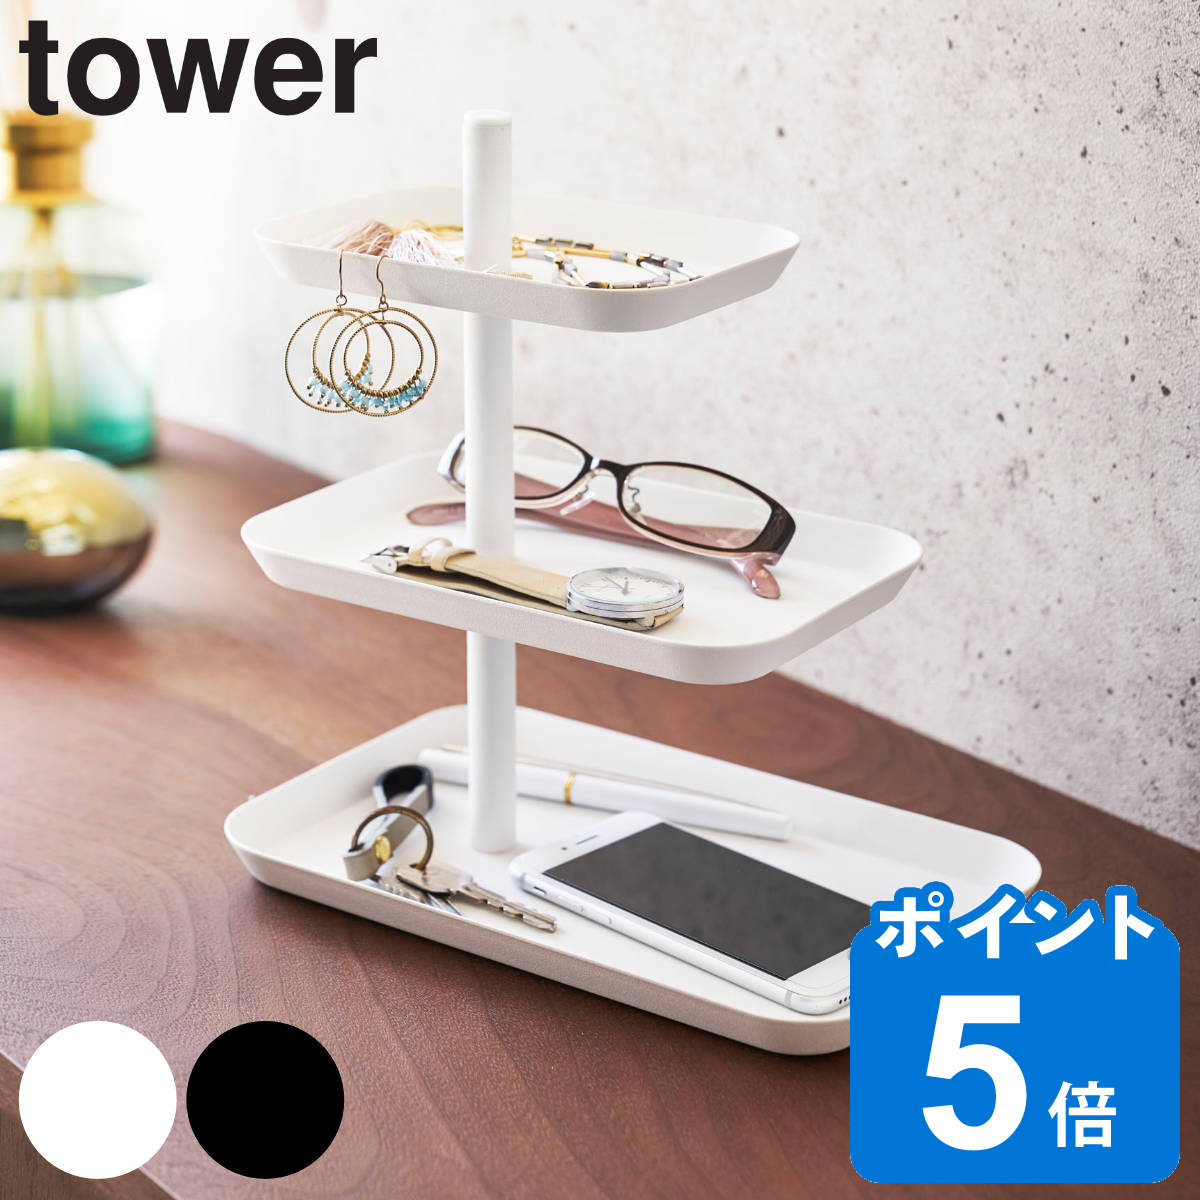 山崎実業 tower アクセサリー3段トレー タワー